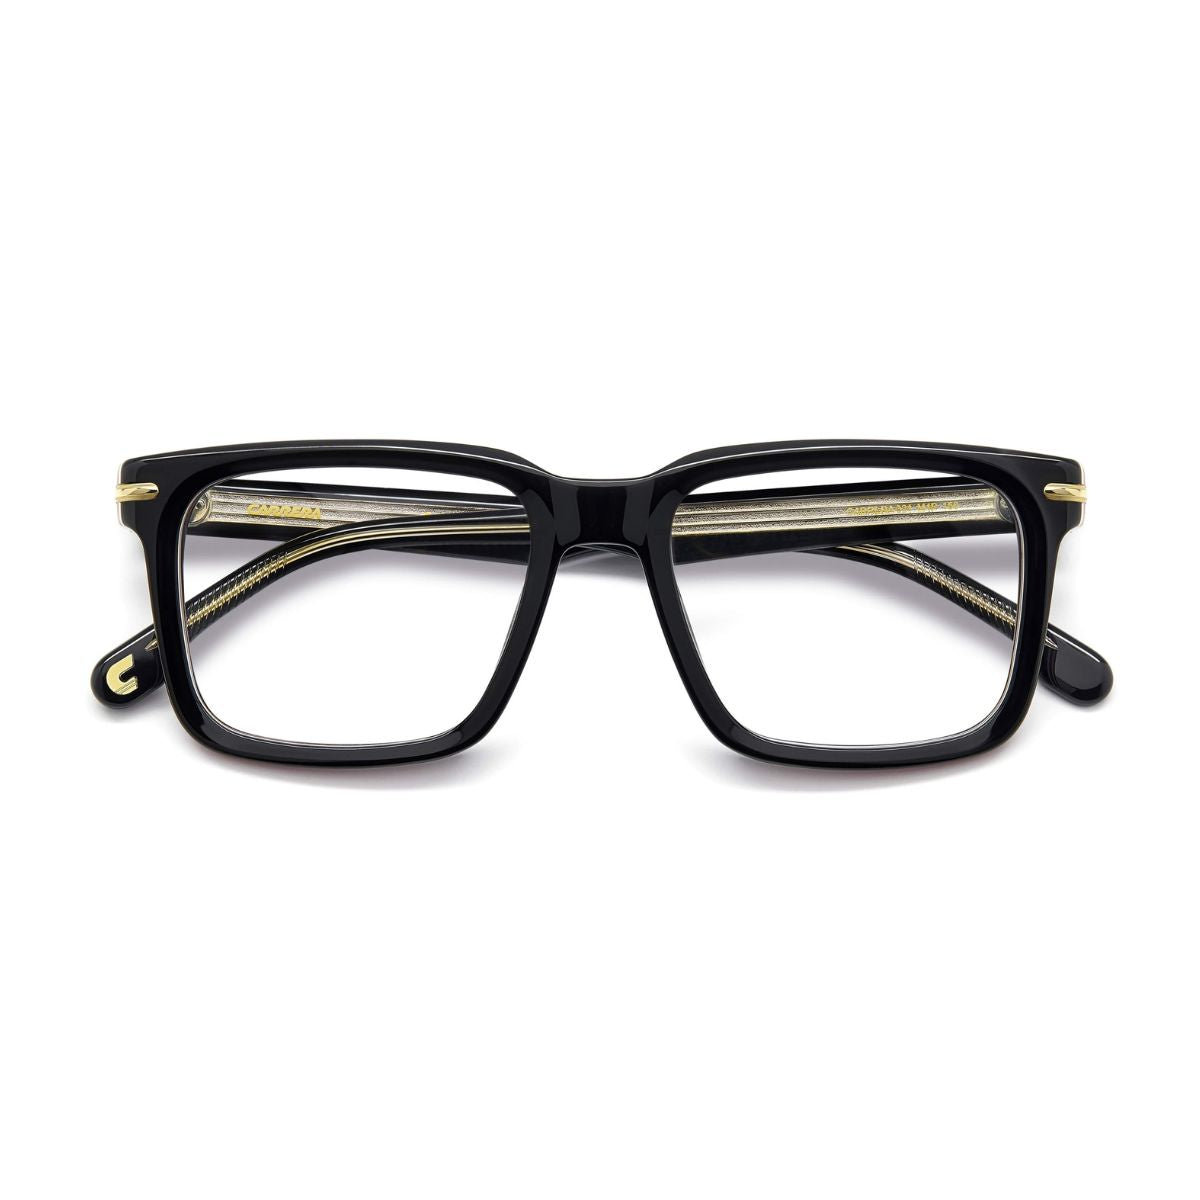 "buy Carrera 321 M4P optical eyewear frame for men's online at optorium"